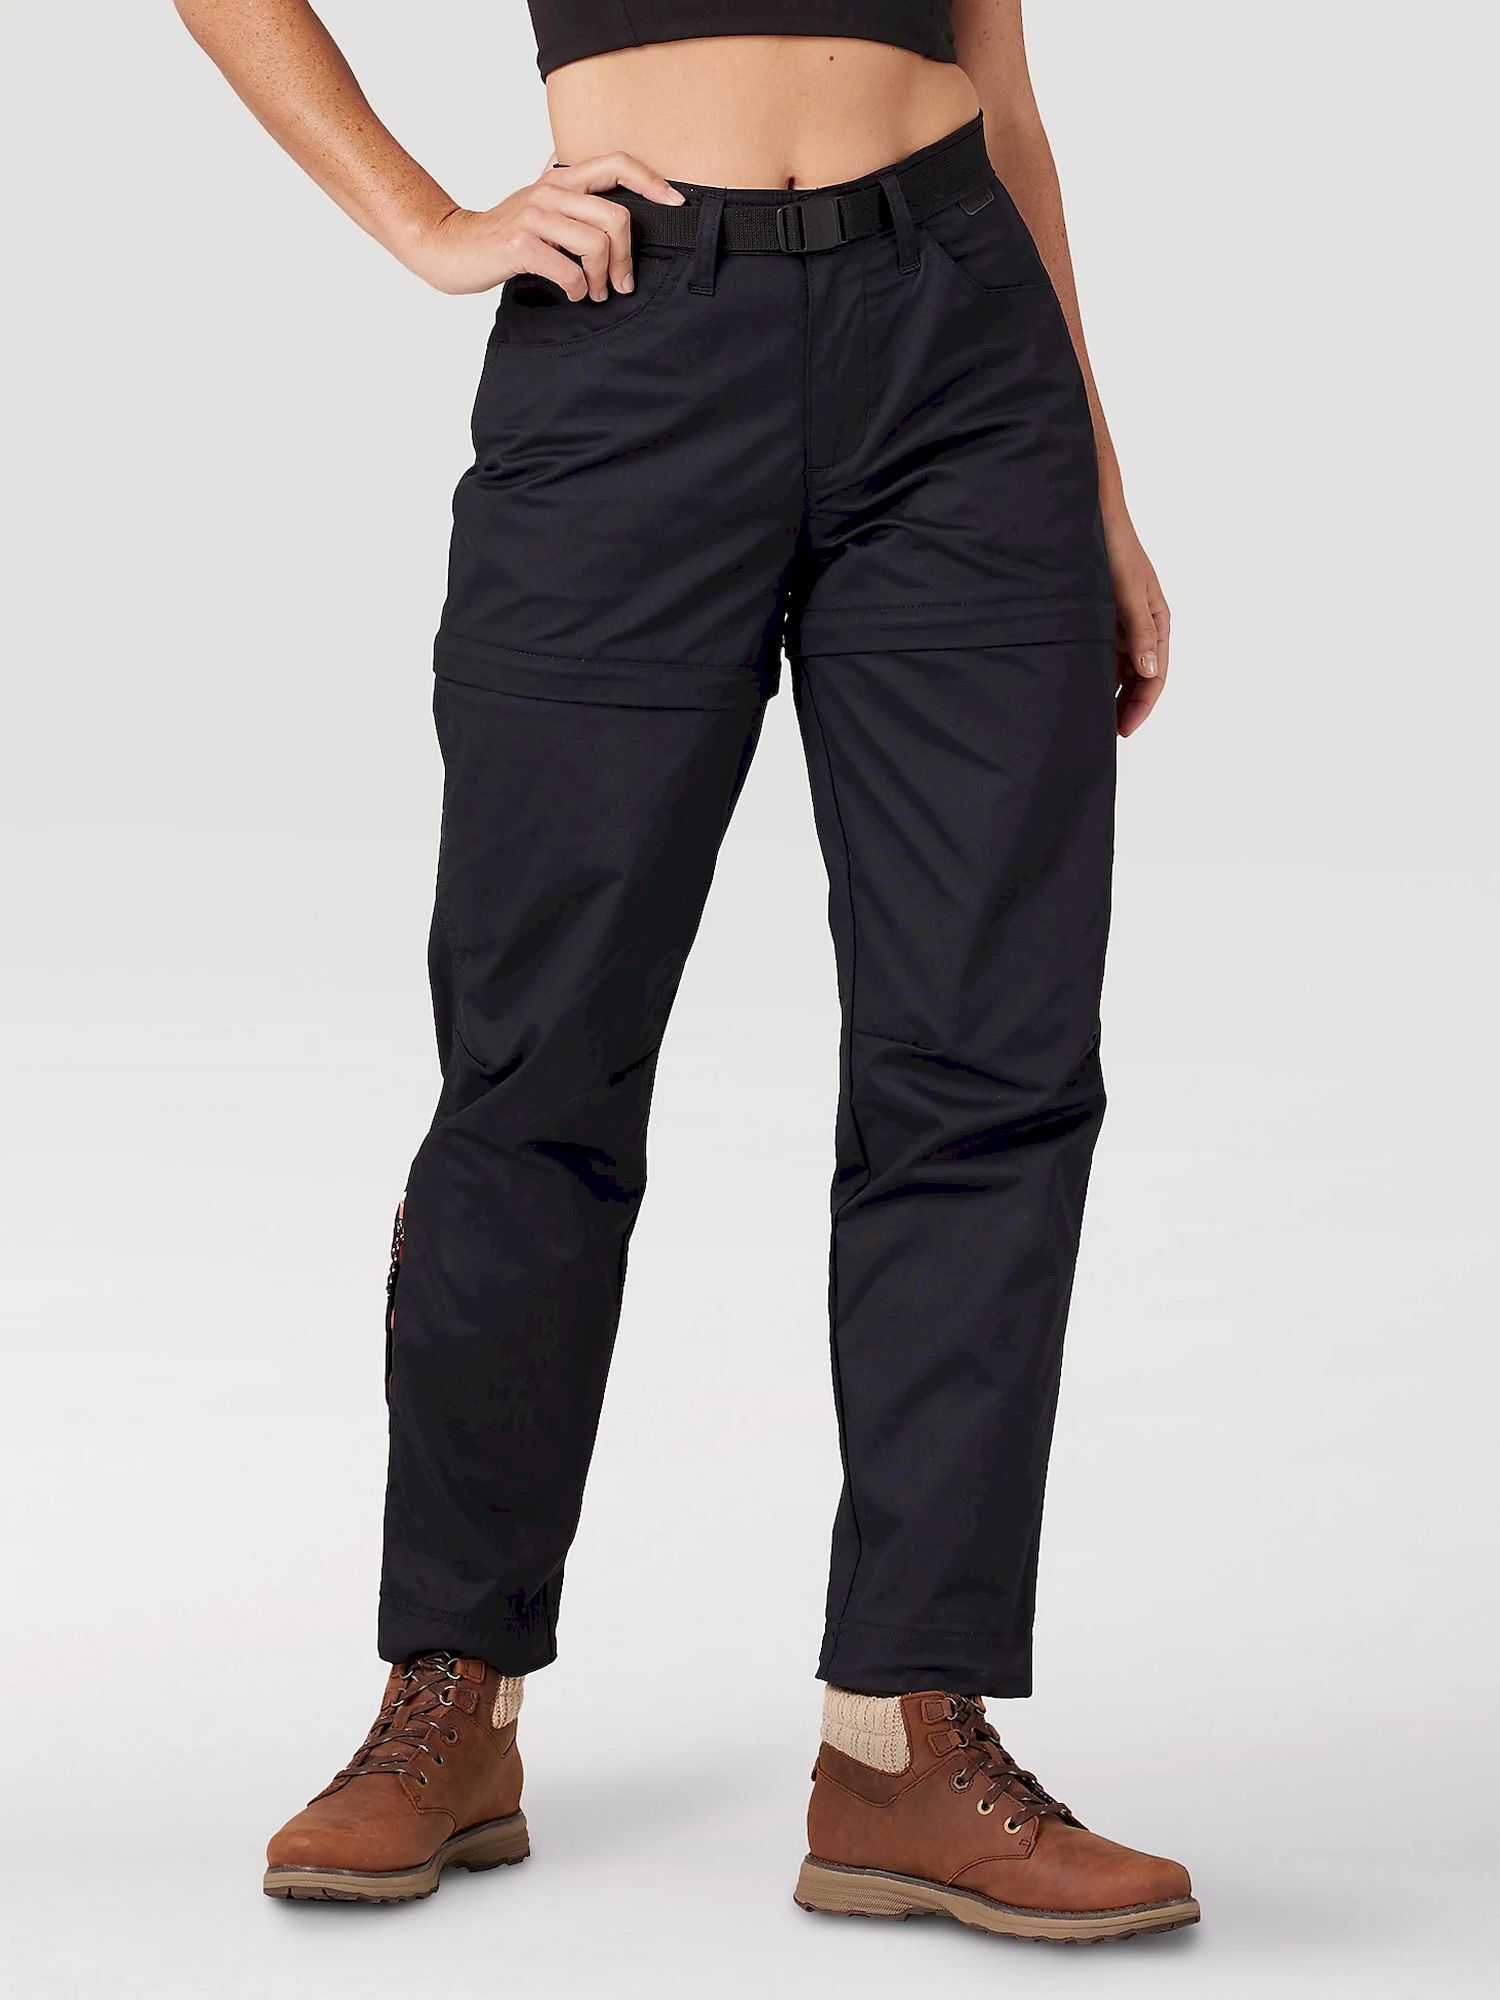 Wrangler All Terrain Gear Packable Zipoff Pant - Walking trousers - Women's | Hardloop